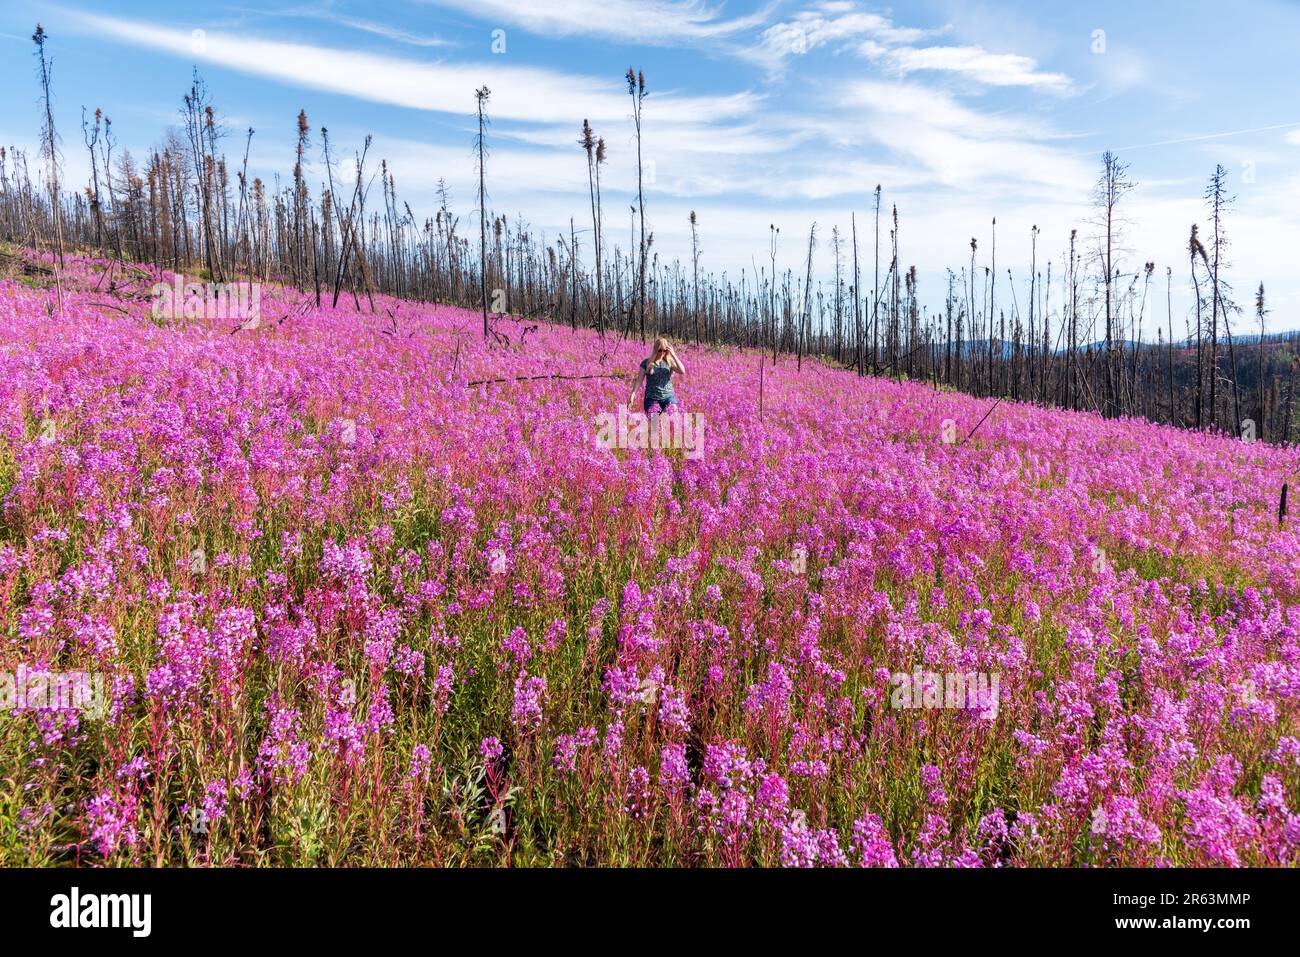 Eine Frau, die im Sommer in einer rosafarbenen, violetten Blumenlandschaft in der Wildnis mit Millionen von Feuerskräutern und landschaftlich reizvollen Landschaften zu sehen ist Stockfoto